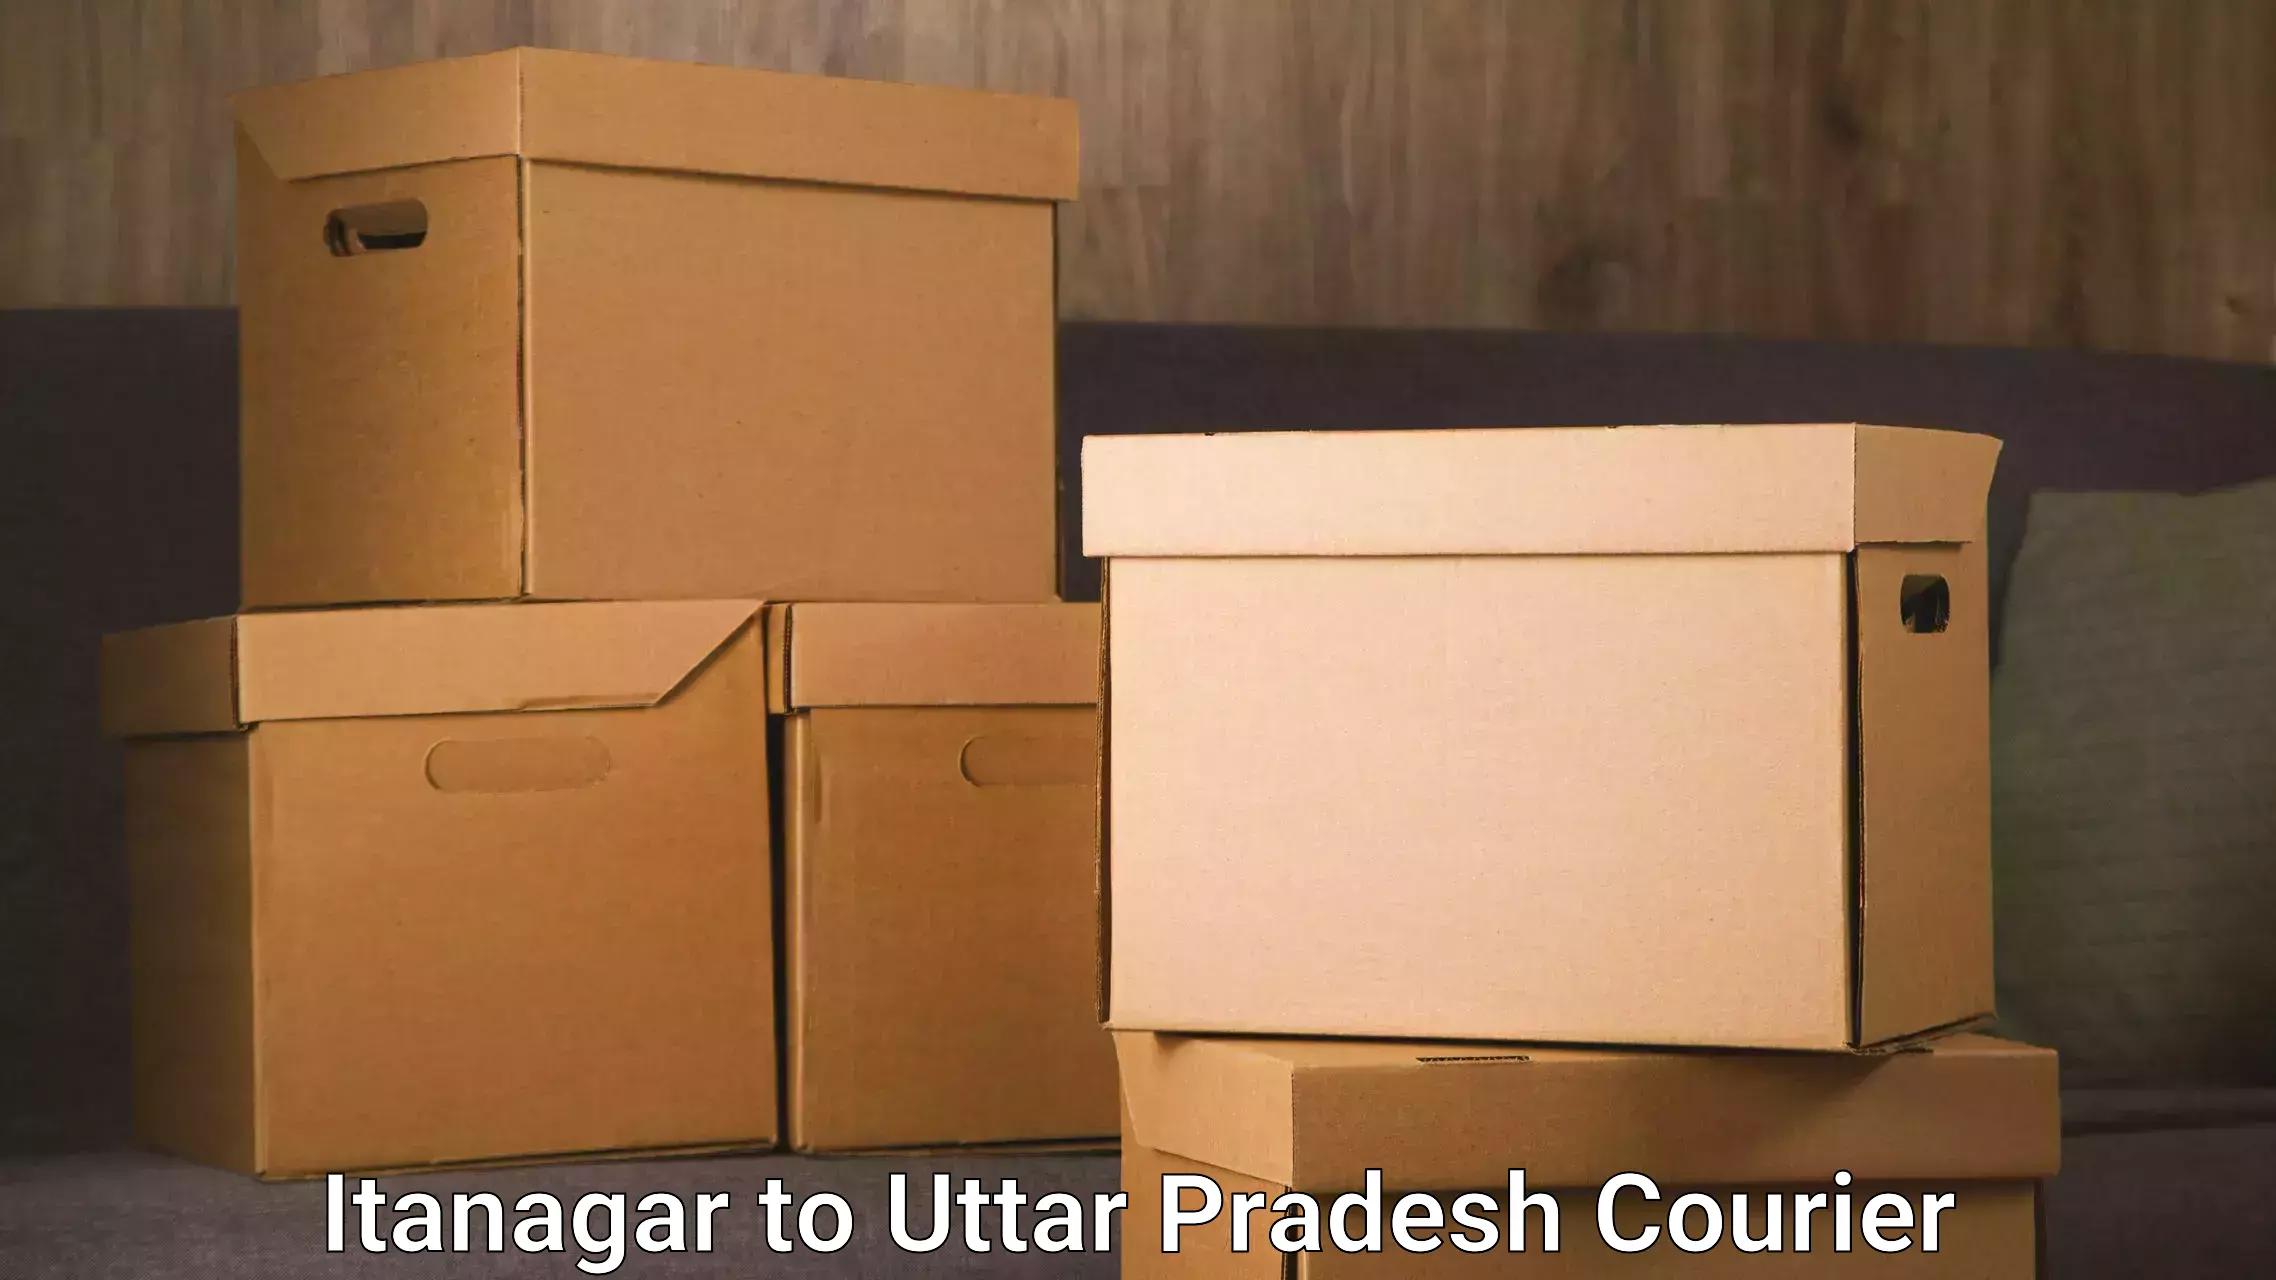 Flexible delivery schedules Itanagar to Uttar Pradesh